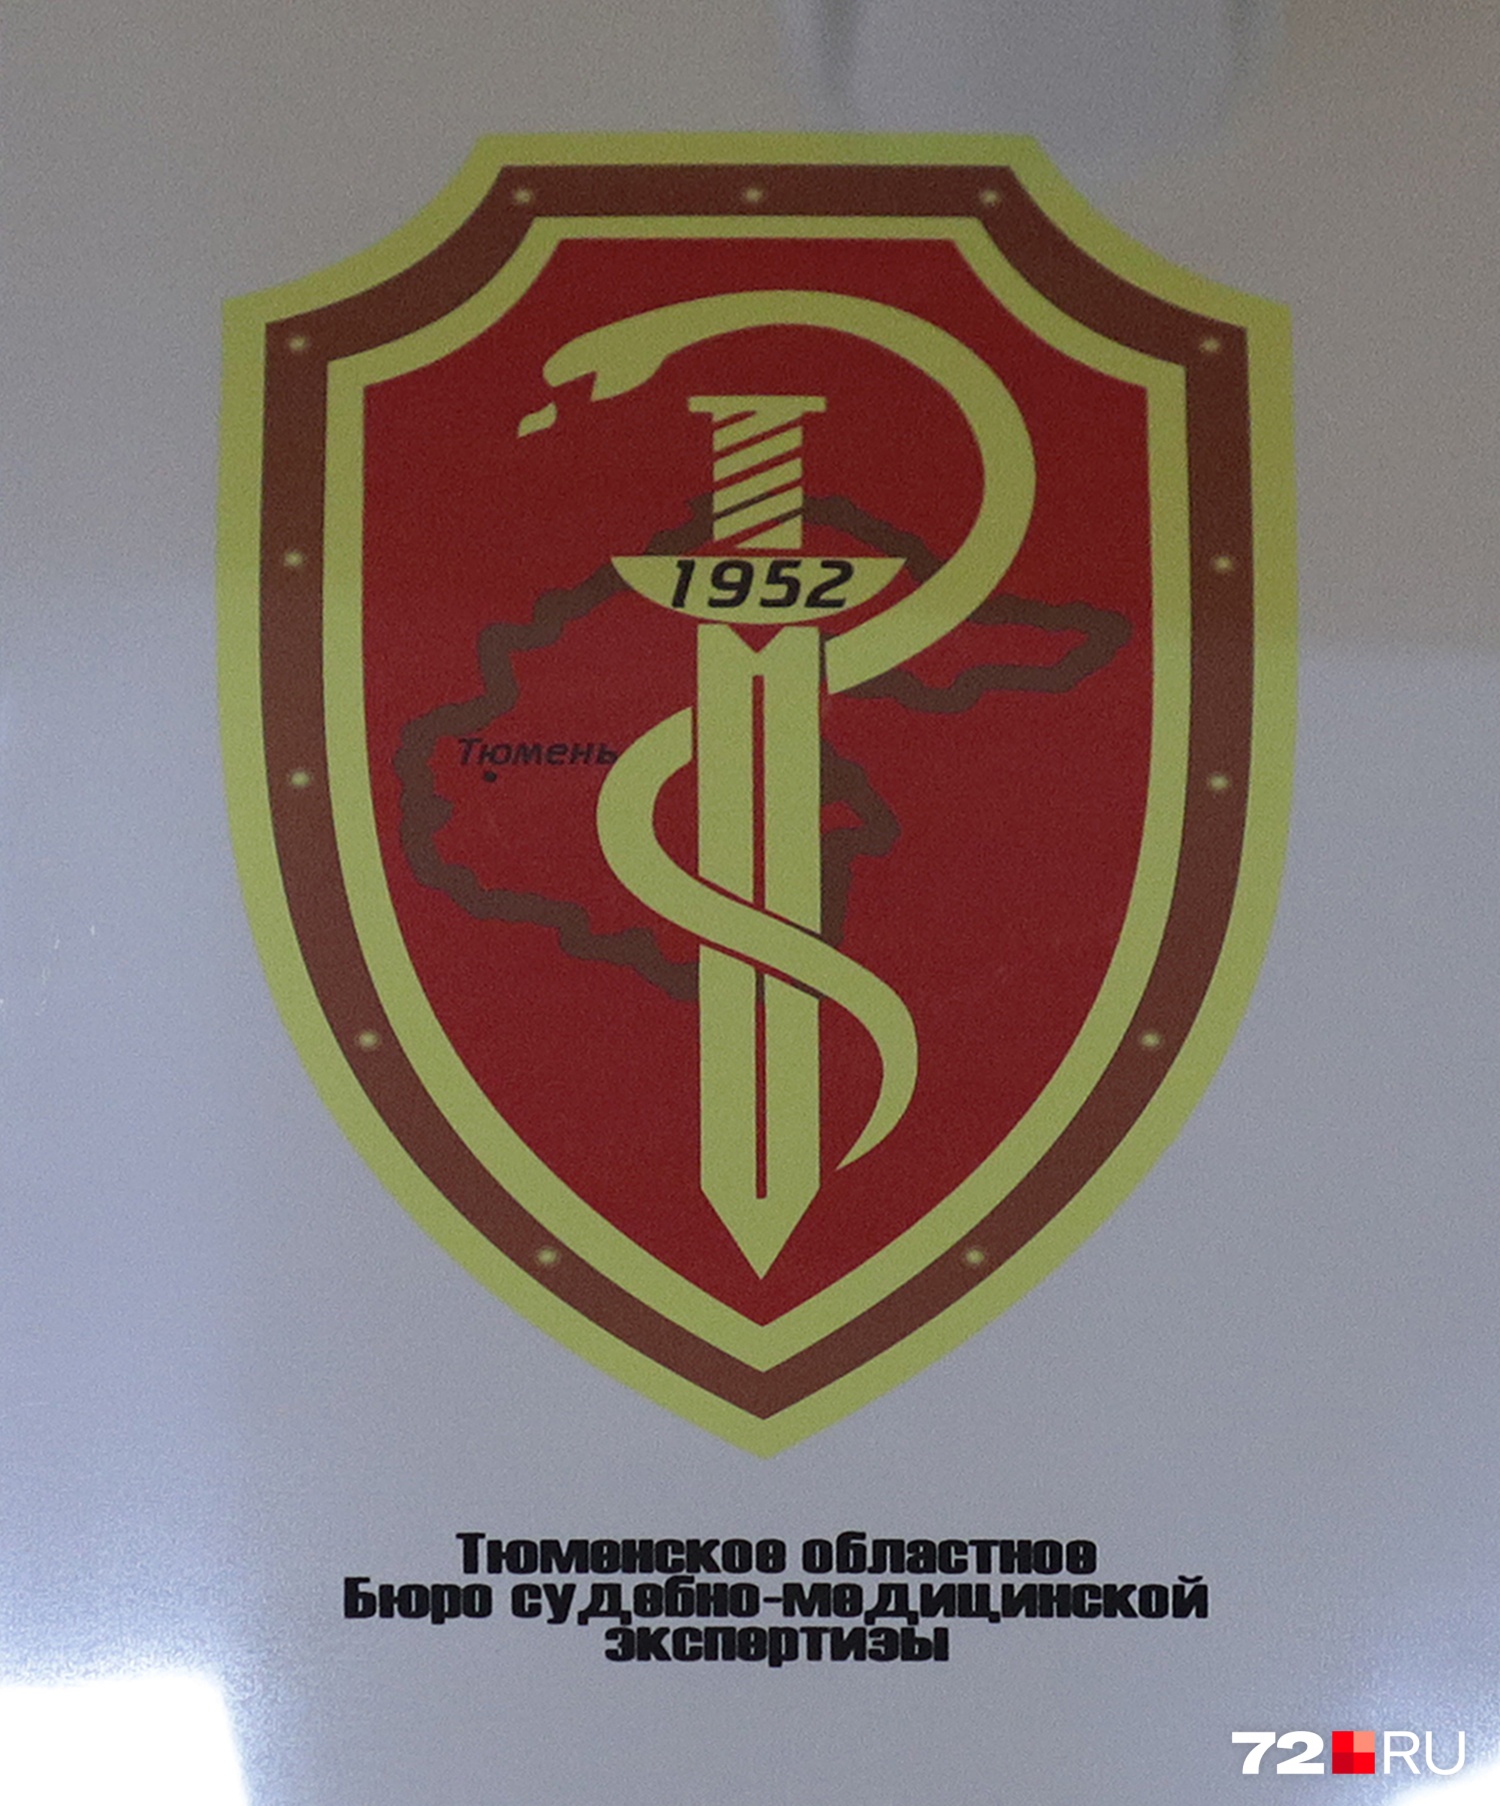 Это официальная эмблема тюменского «Областного бюро судебно-медицинской экспертизы» 